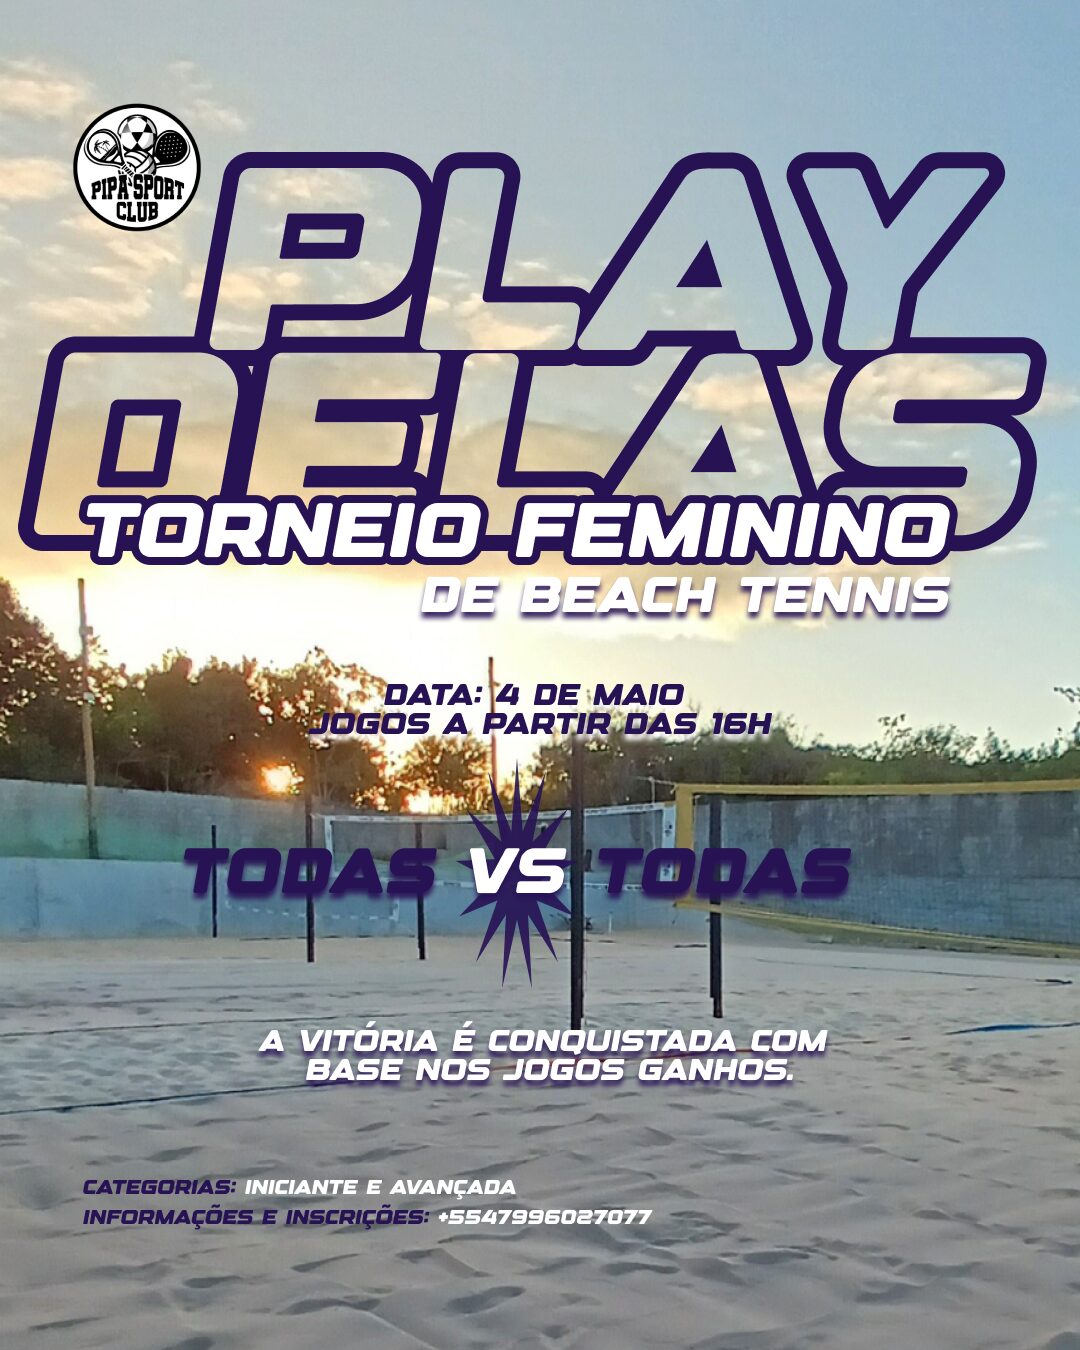 Torneio de Beach tennis femenino - 4 de maio (2)